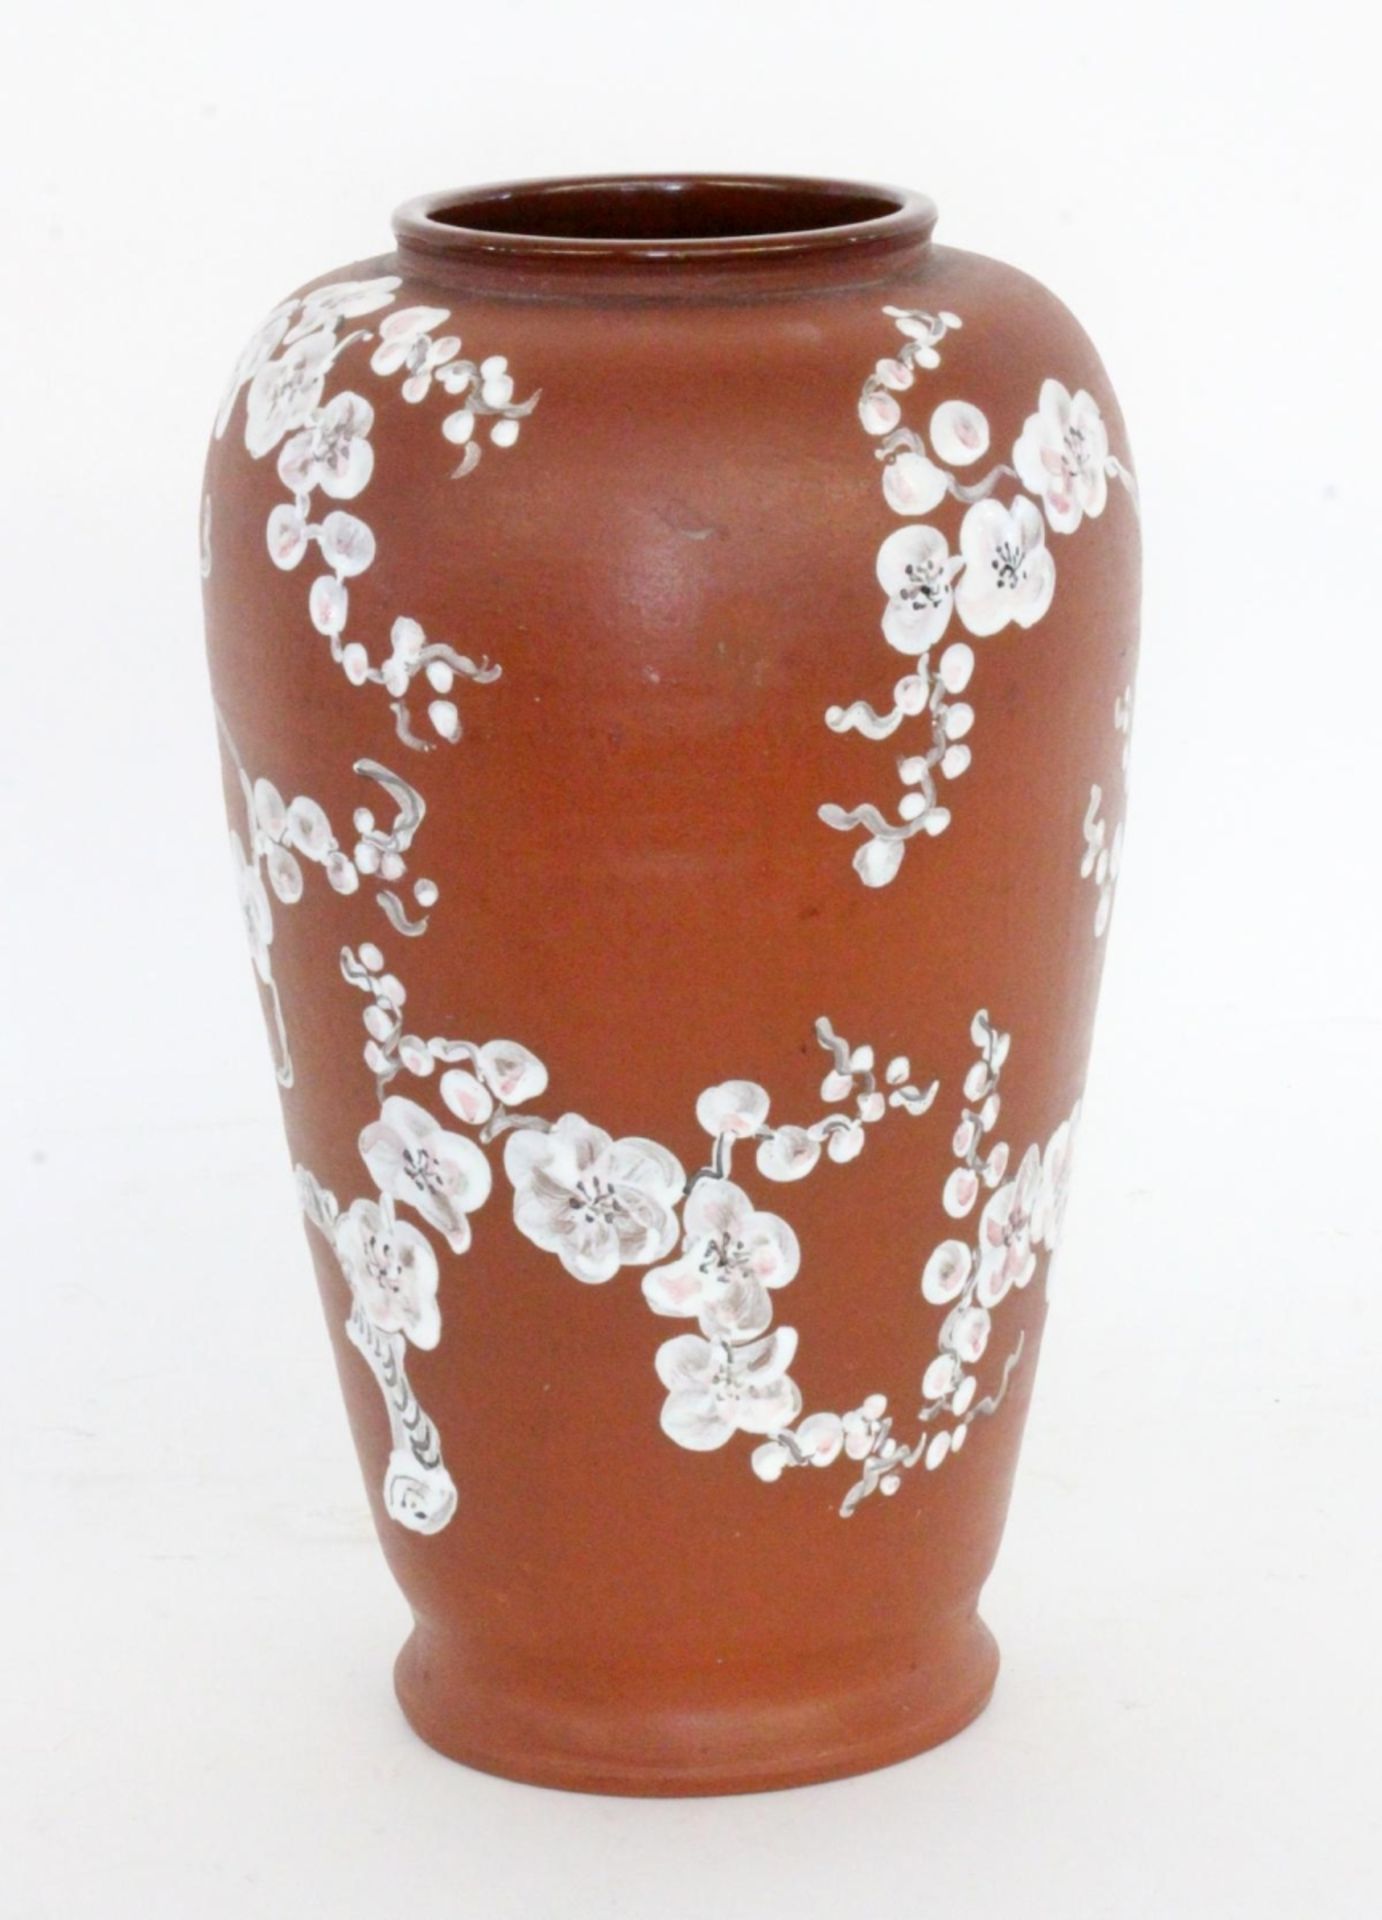 KERAMIKVASE IM JAPANISCHEN STILrötlicher Tonscherben mit pastos gemalten Blütenzweigen. Gemarkt. H.